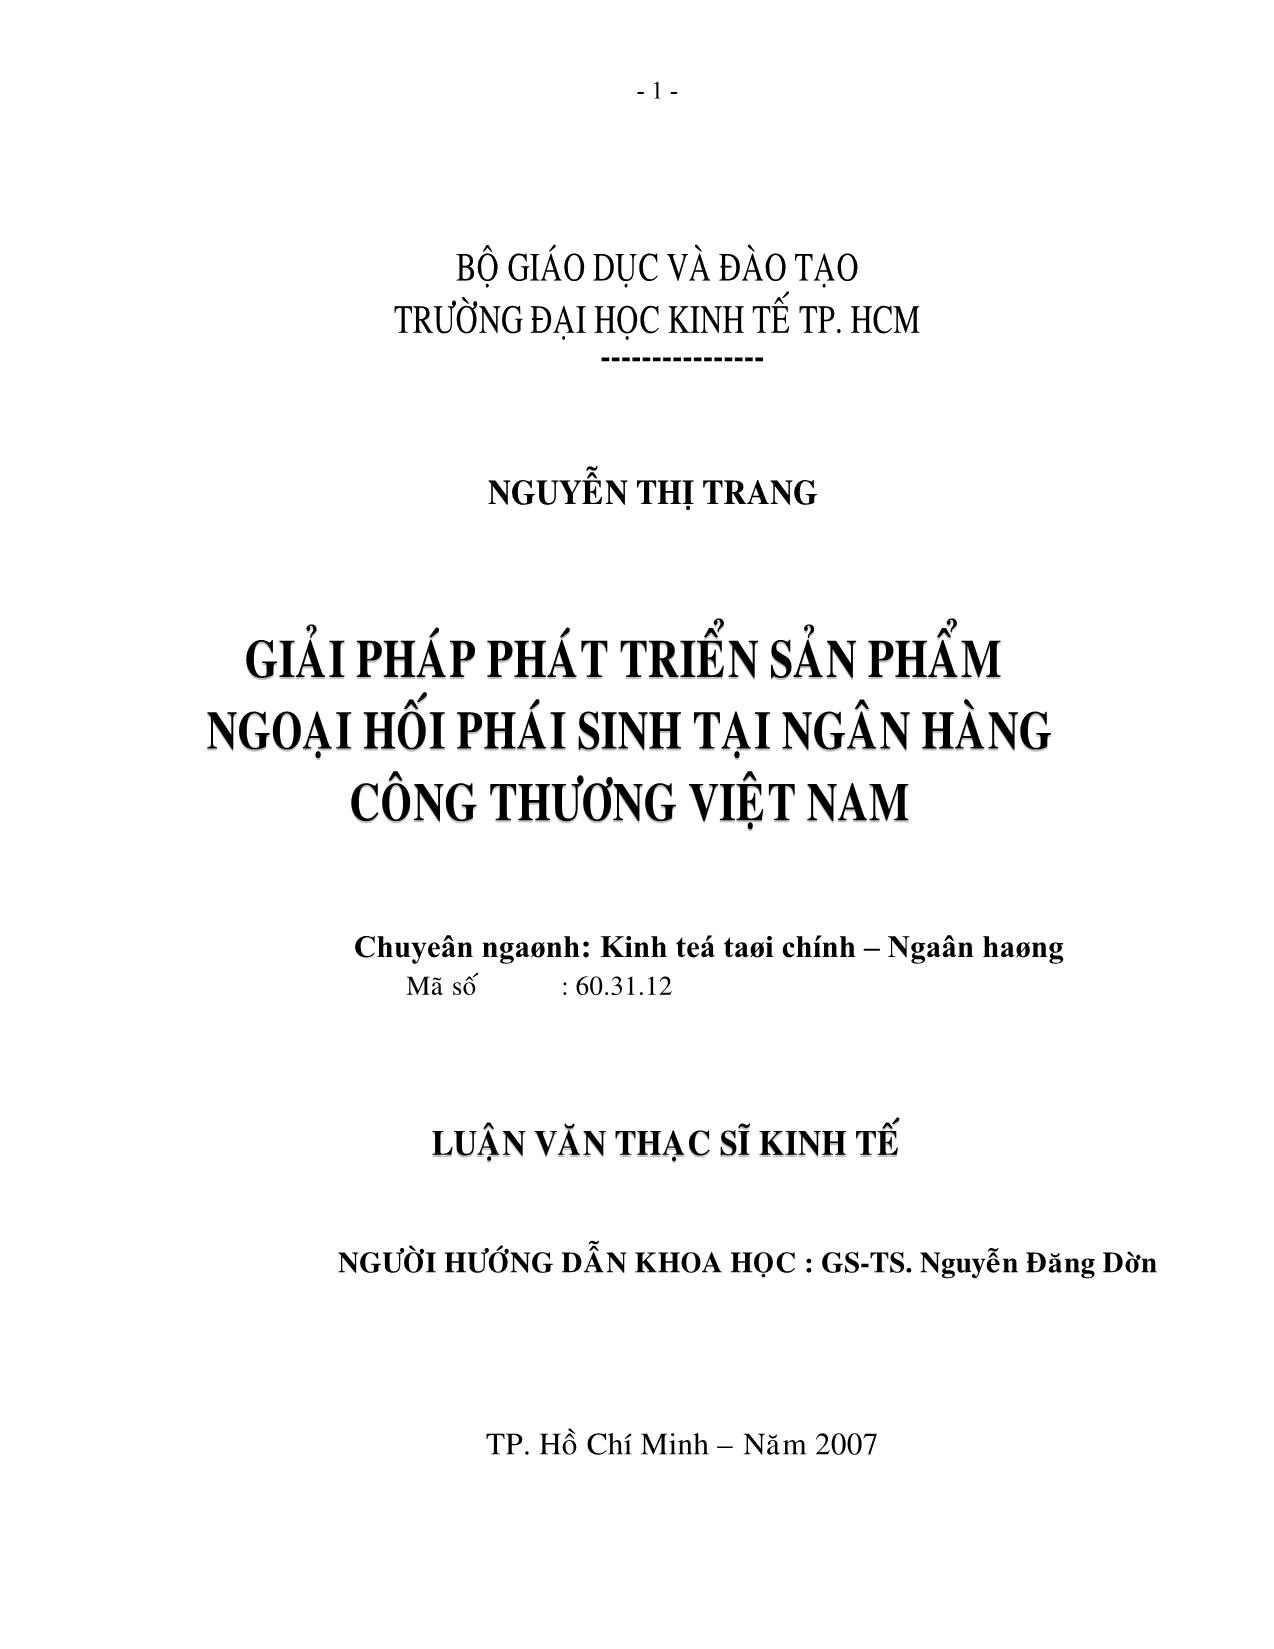 Luận văn Giải pháp phát triển sản phẩm ngoại hối phái sinh tại ngân hàng công thương Việt Nam trang 1